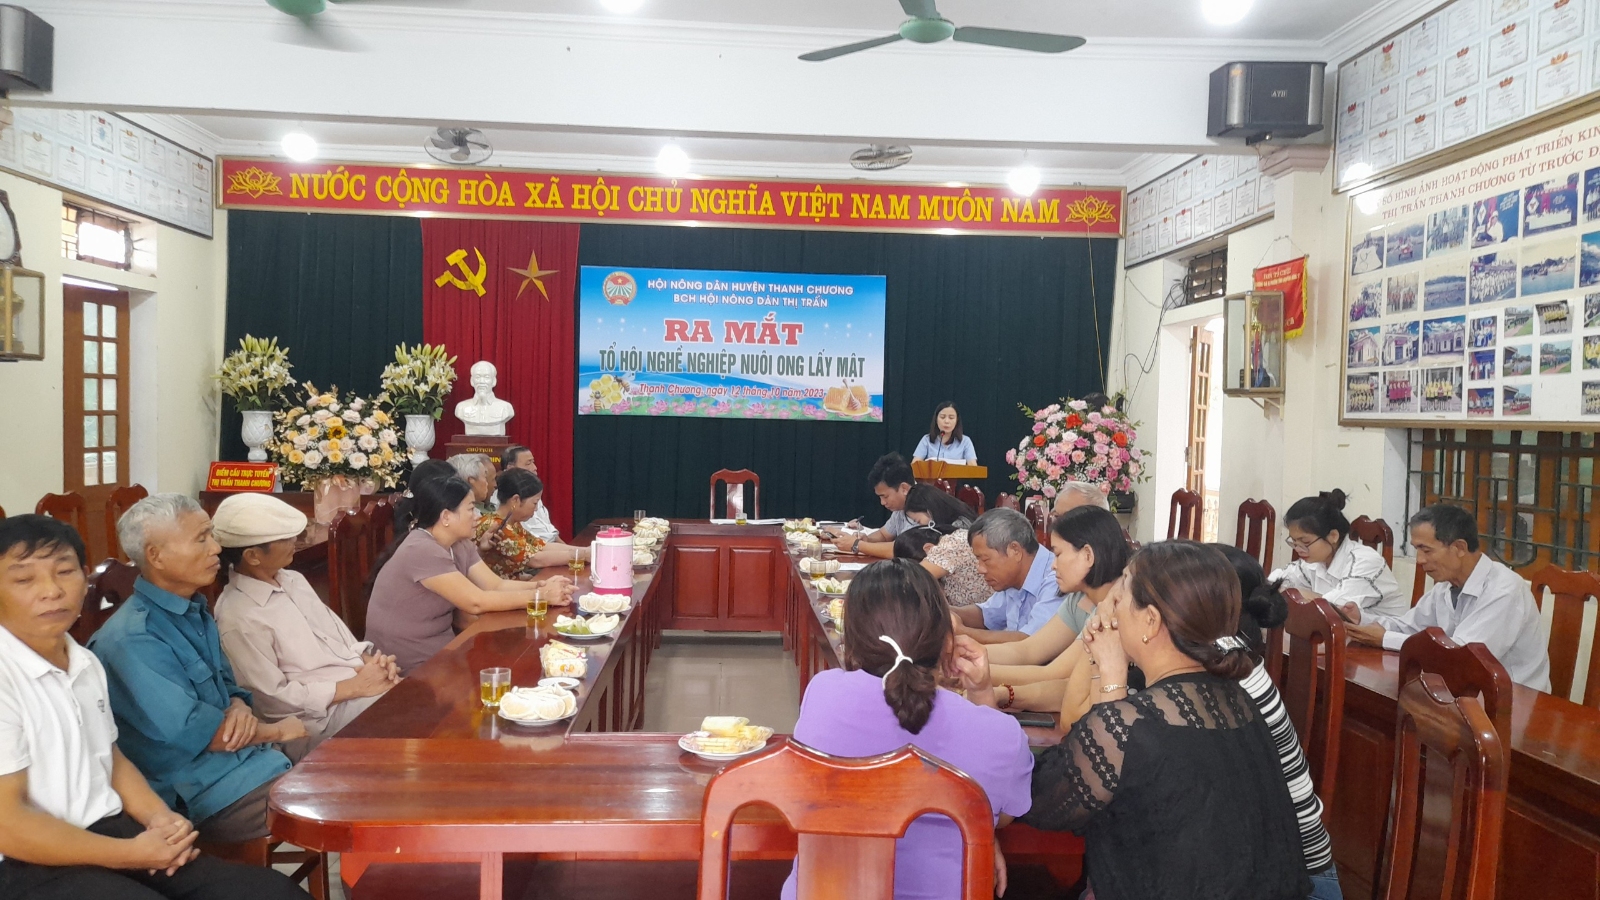 Hội nông dân Thị trấn: Ra mắt tổ hội nghề nghiệp nuôi ong lấy mật và Tọa đàm kỷ niệm ngày thành lập Hội nông dân Việt Nam